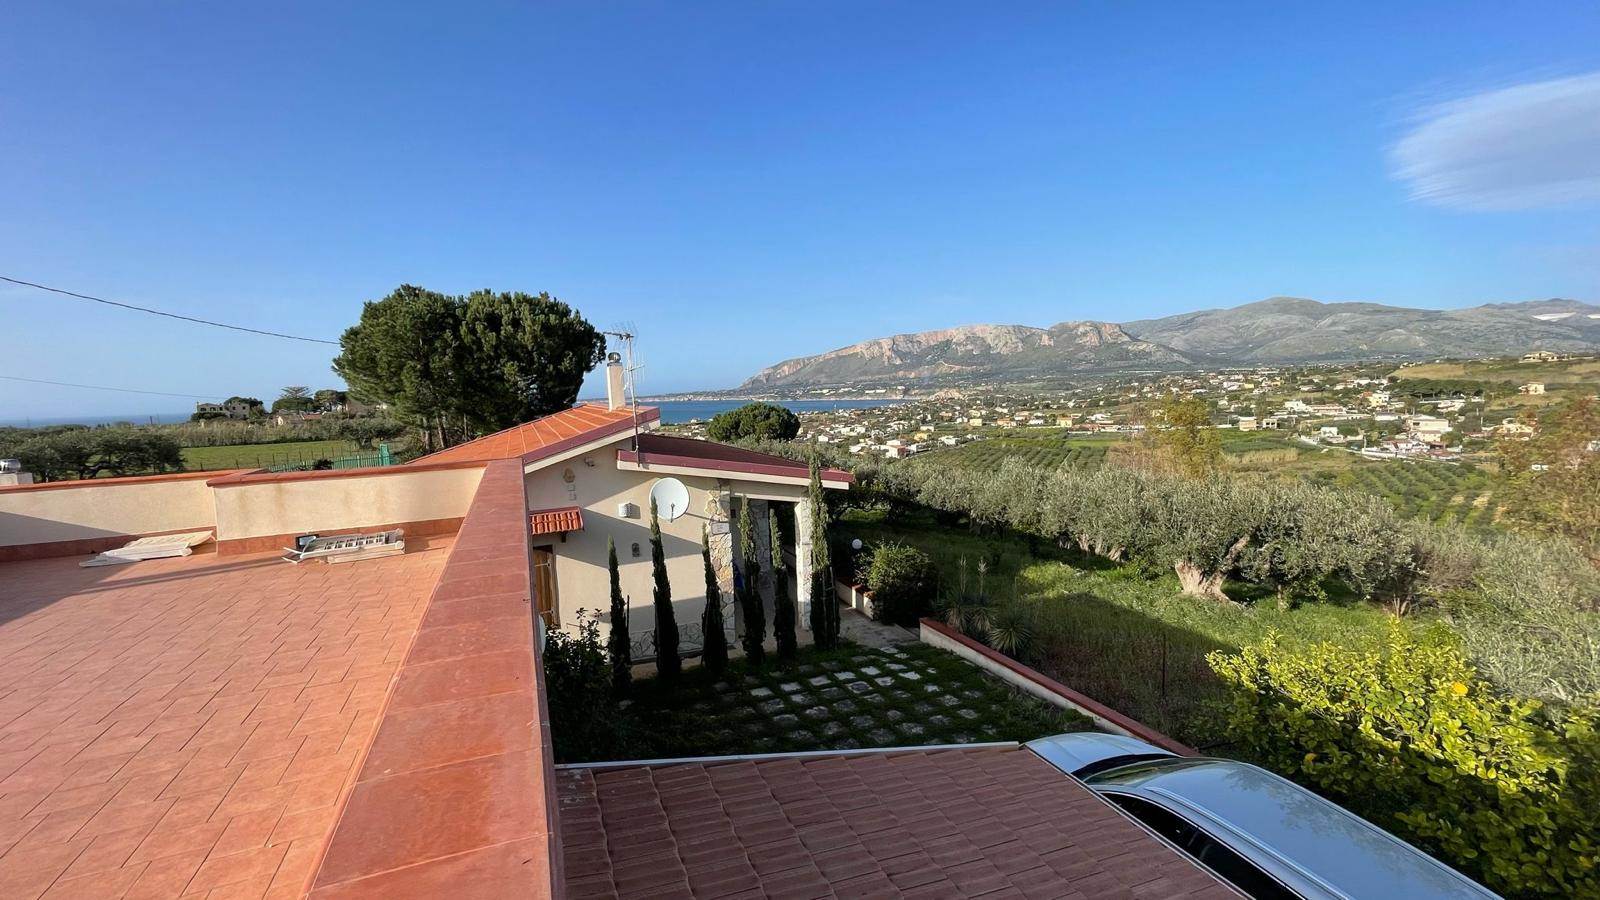 Villa in vendita a Trappeto, 4 locali, prezzo € 295.000 | PortaleAgenzieImmobiliari.it